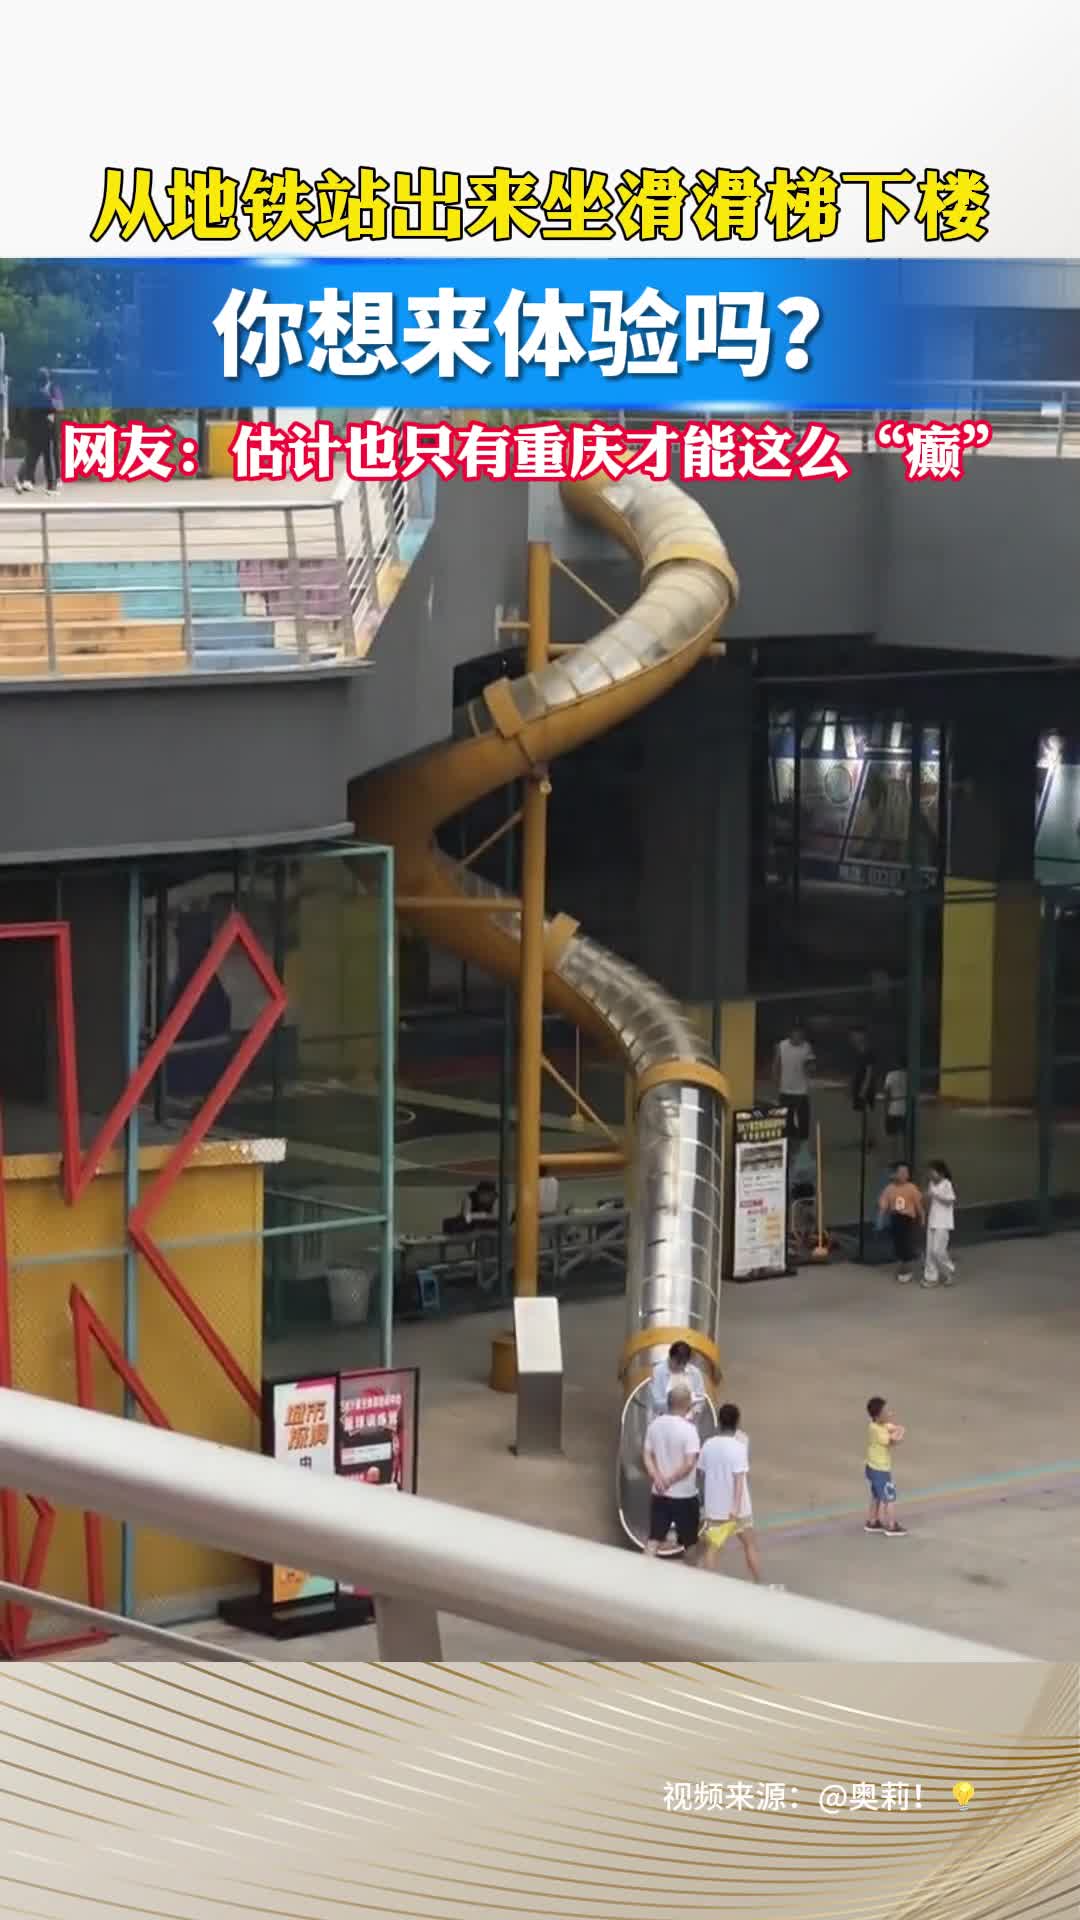 从地铁站出来坐滑滑梯下楼，你想来体验吗？